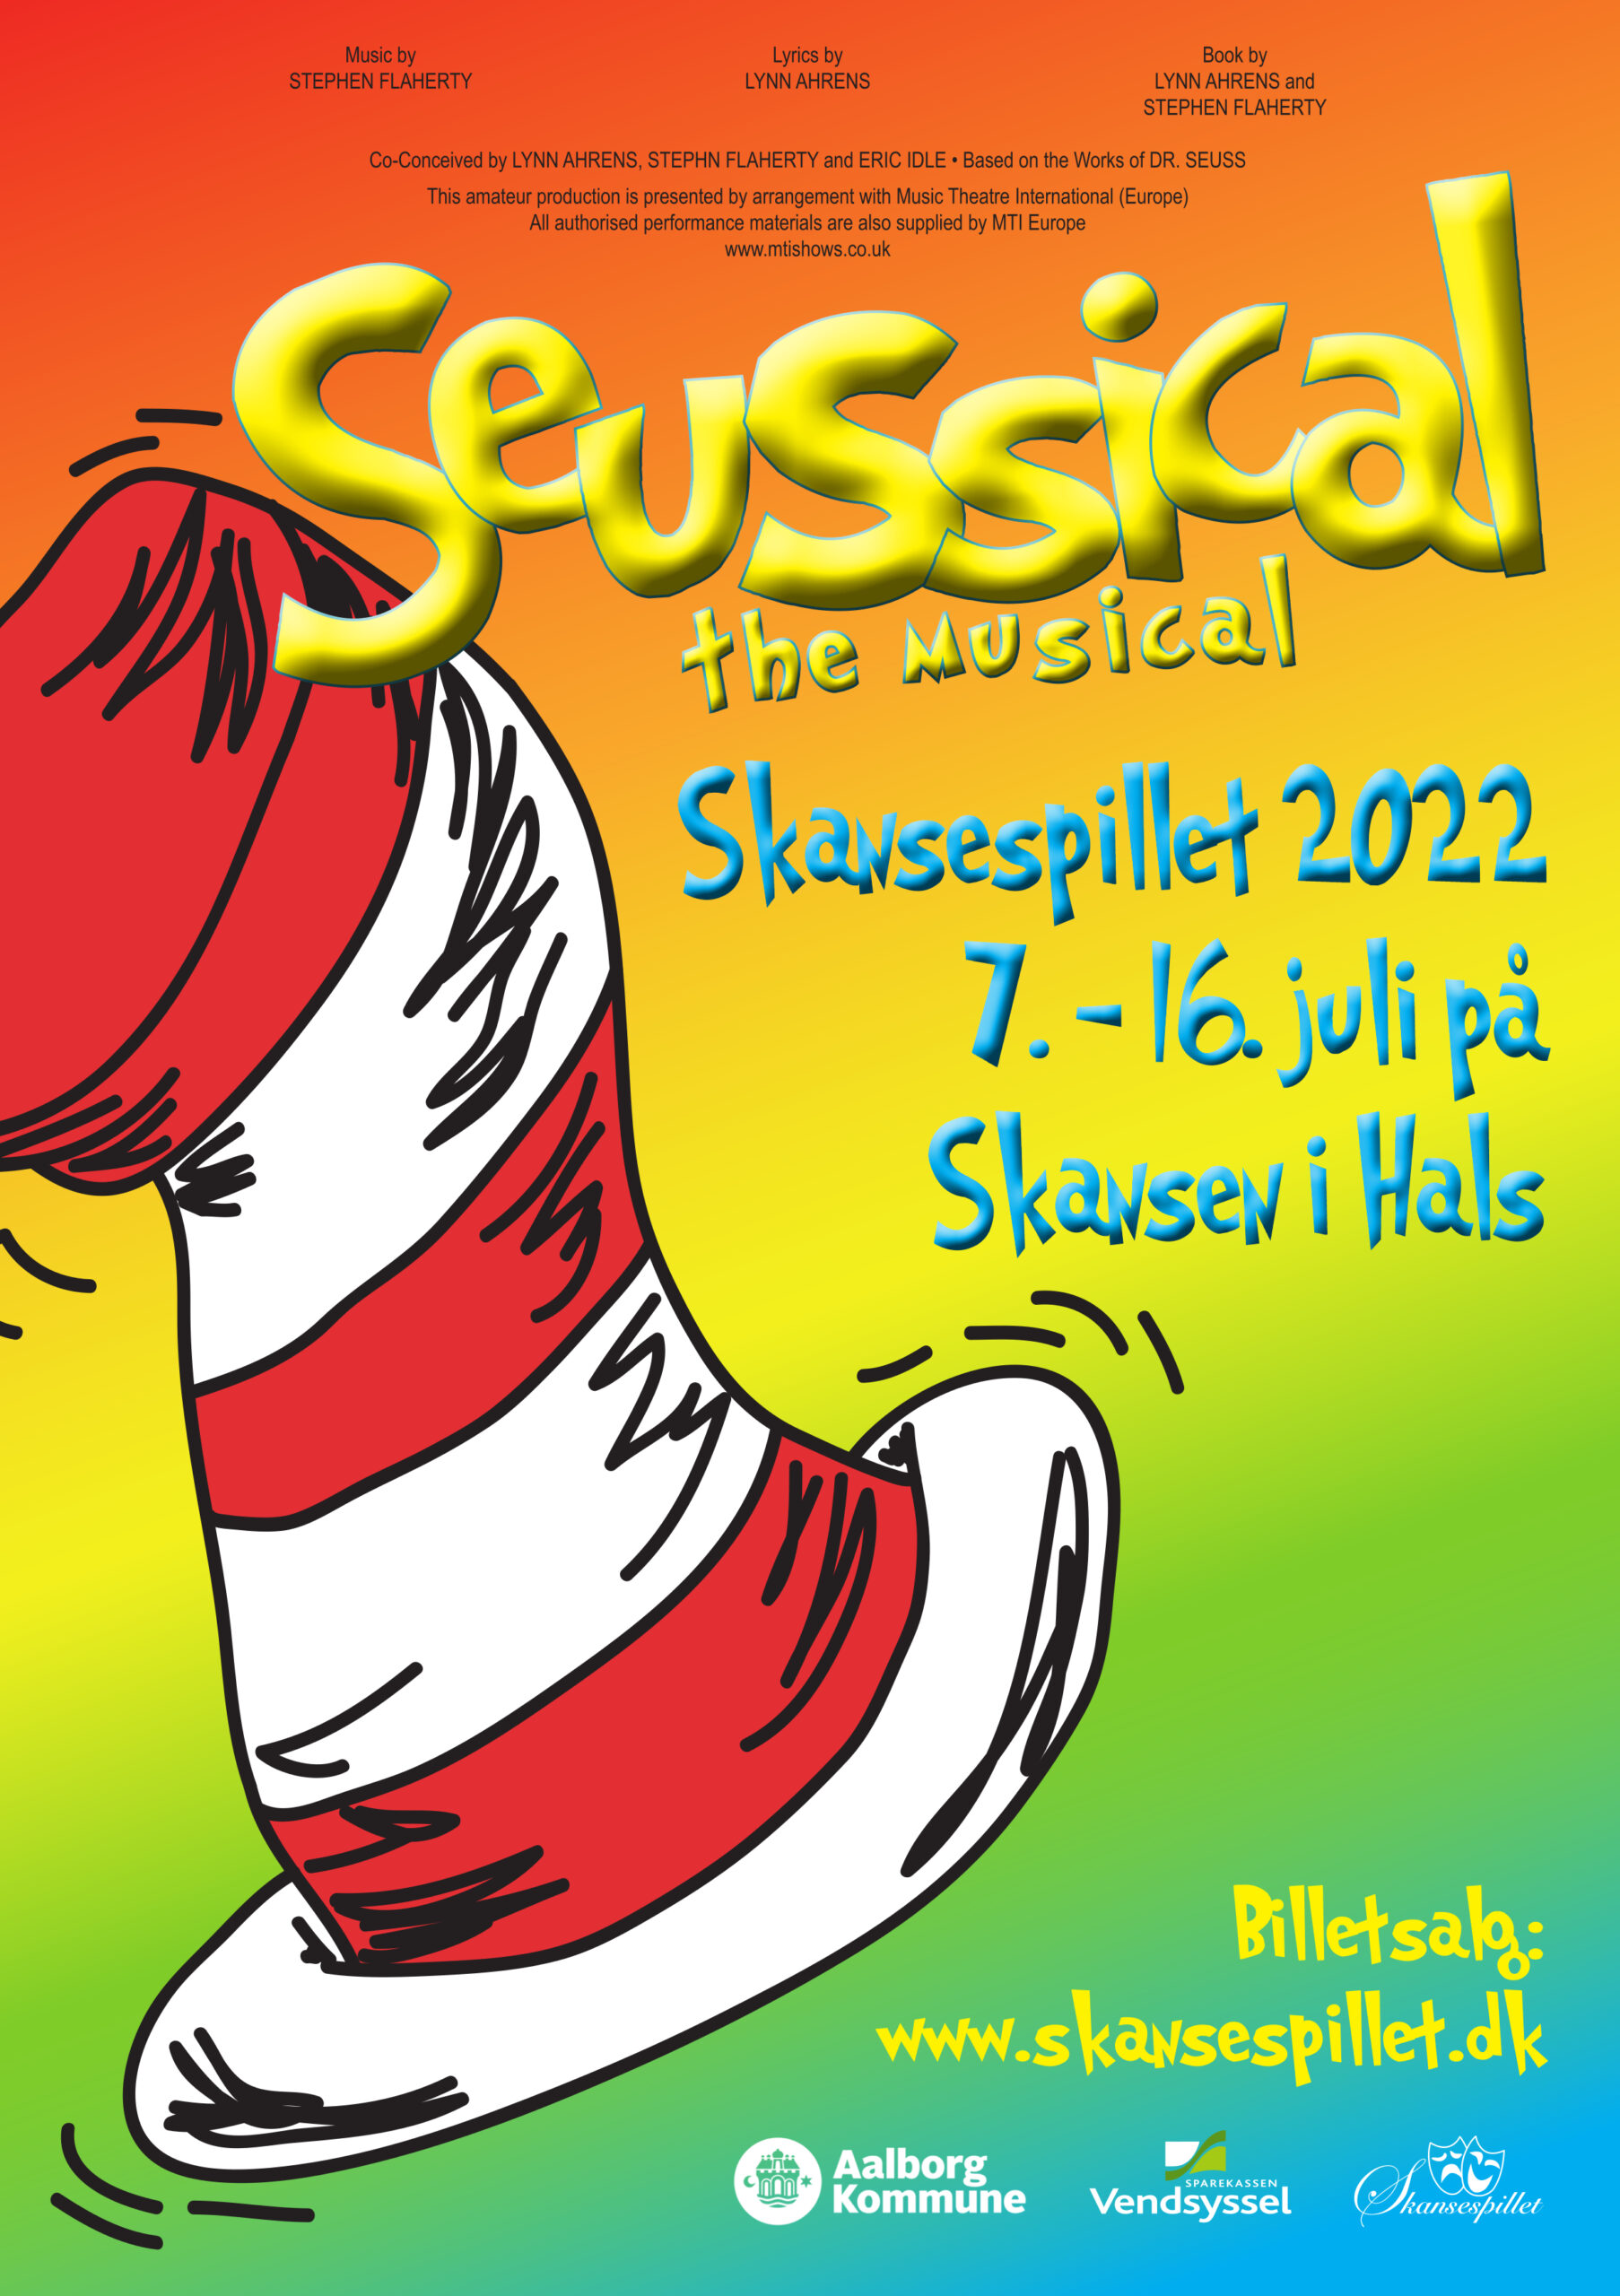 Seussical the Musical - Skansespillet 2022